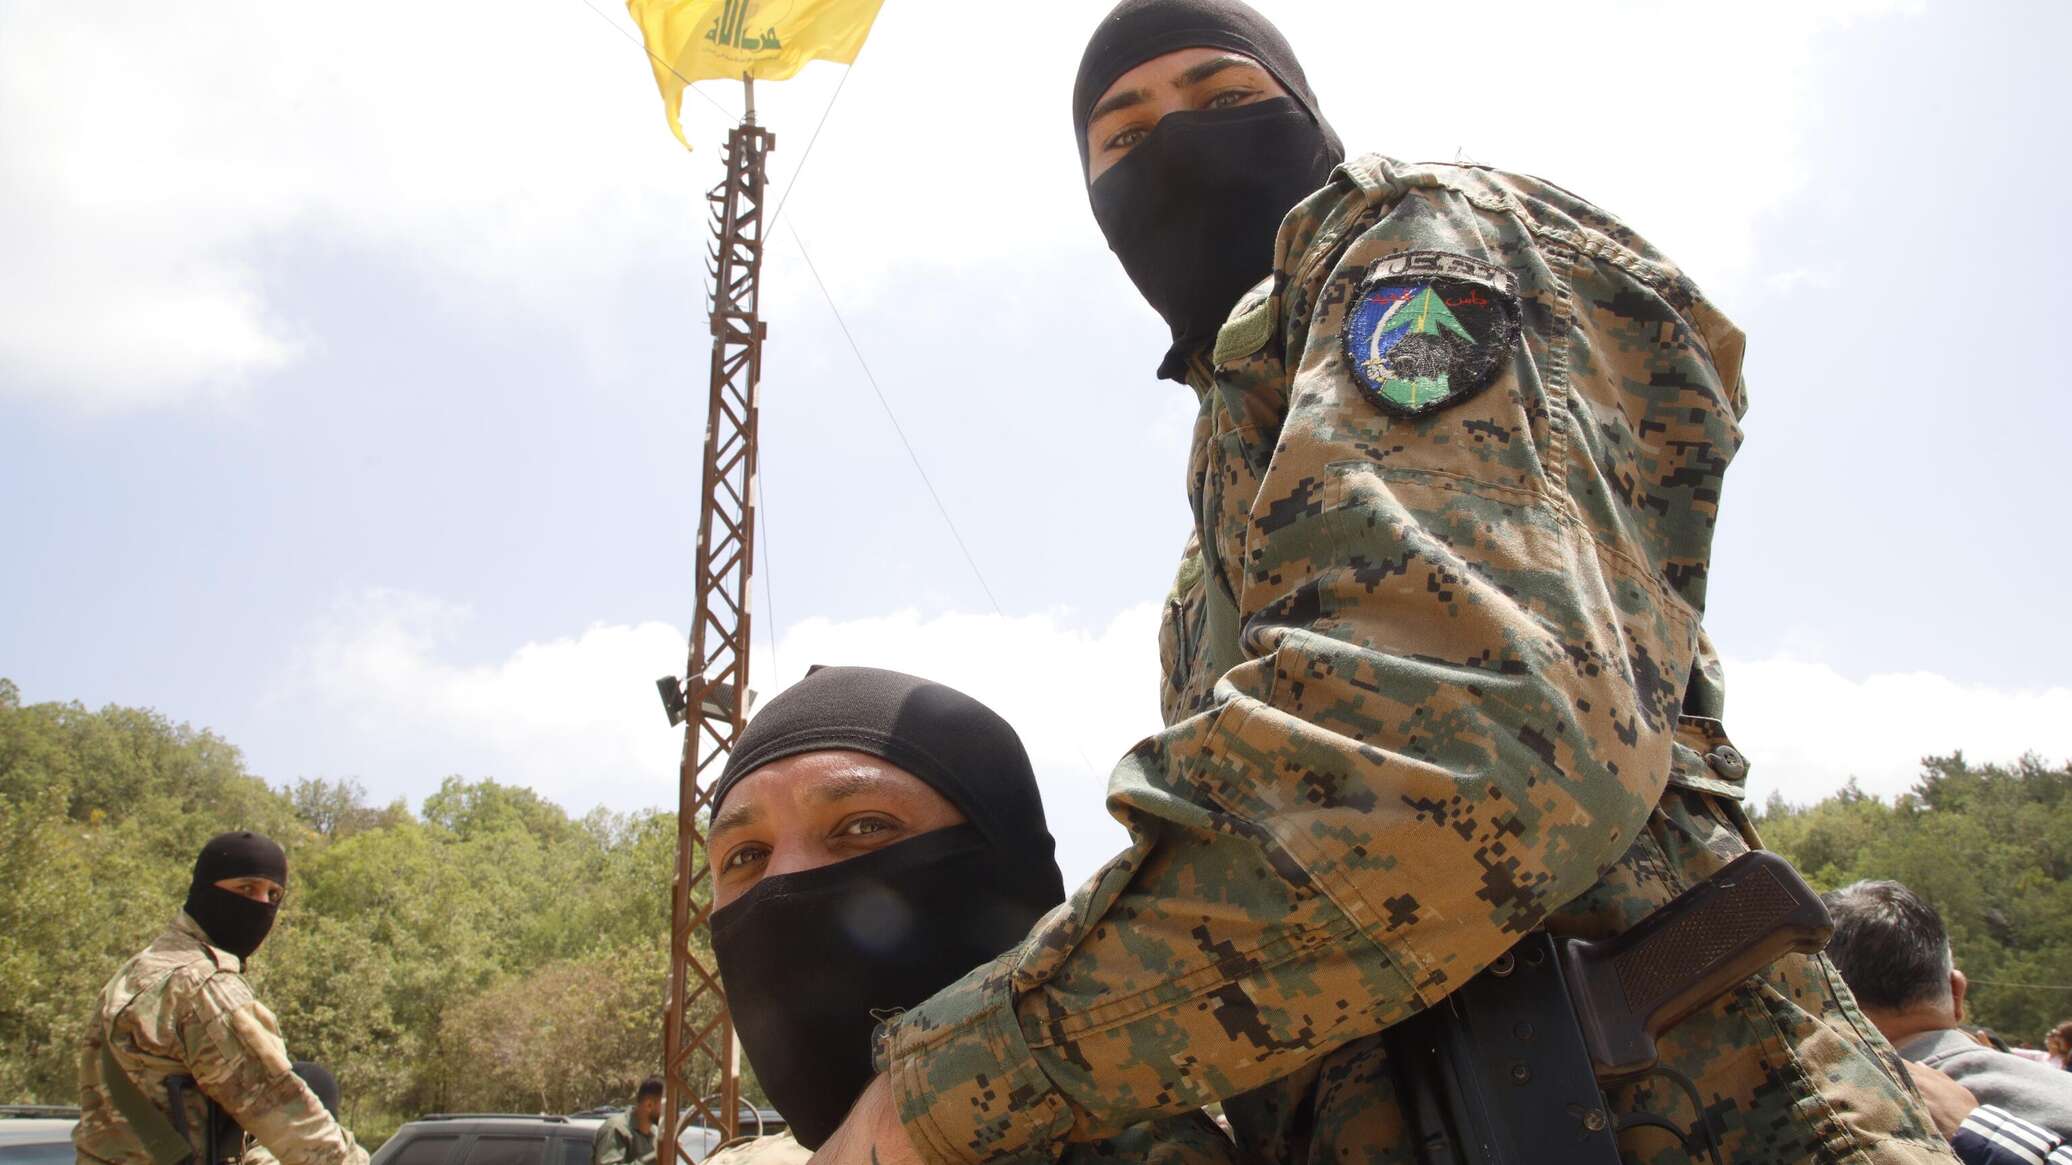 خبير: اغتيال وسام طويل القيادي في "حزب الله" مرحلة جديدة بدأتها إسرائيل في لبنان